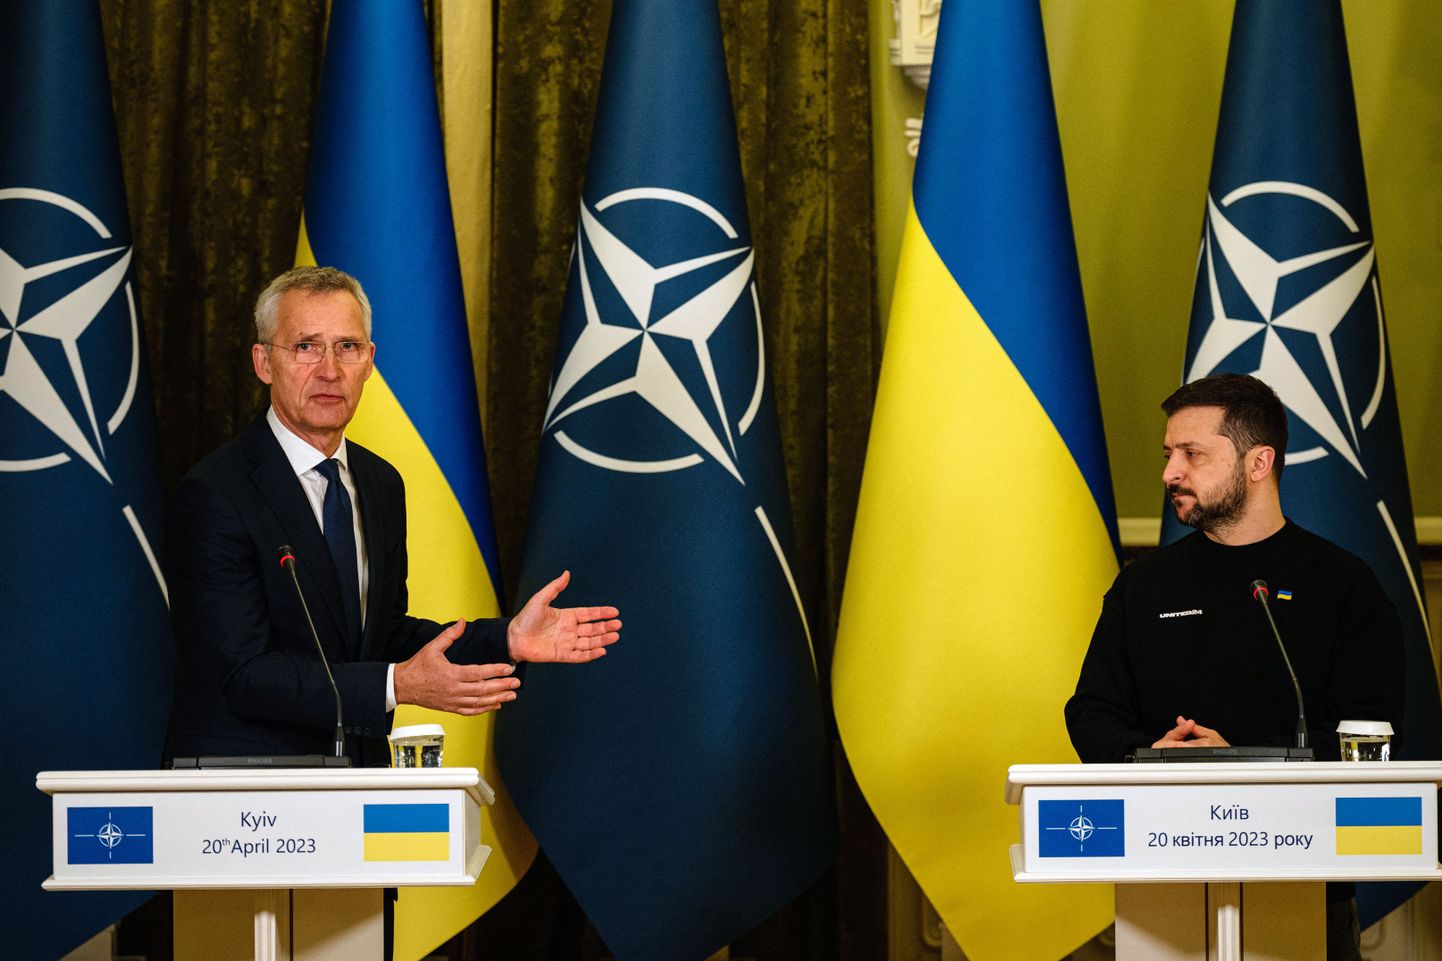 Глава НАТО Йенс Столтенберг и президент Украины Владимир Зеленский на пресс-конференции в Киеве 20 апреля 2023 года.